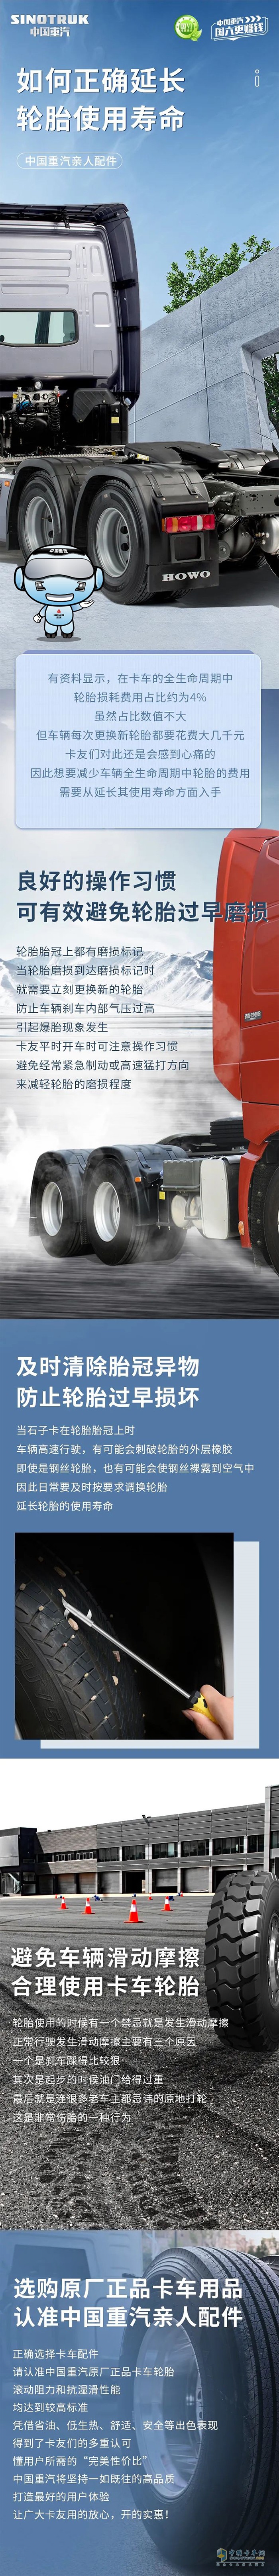 中国重汽 轮胎使用寿命 正确延长